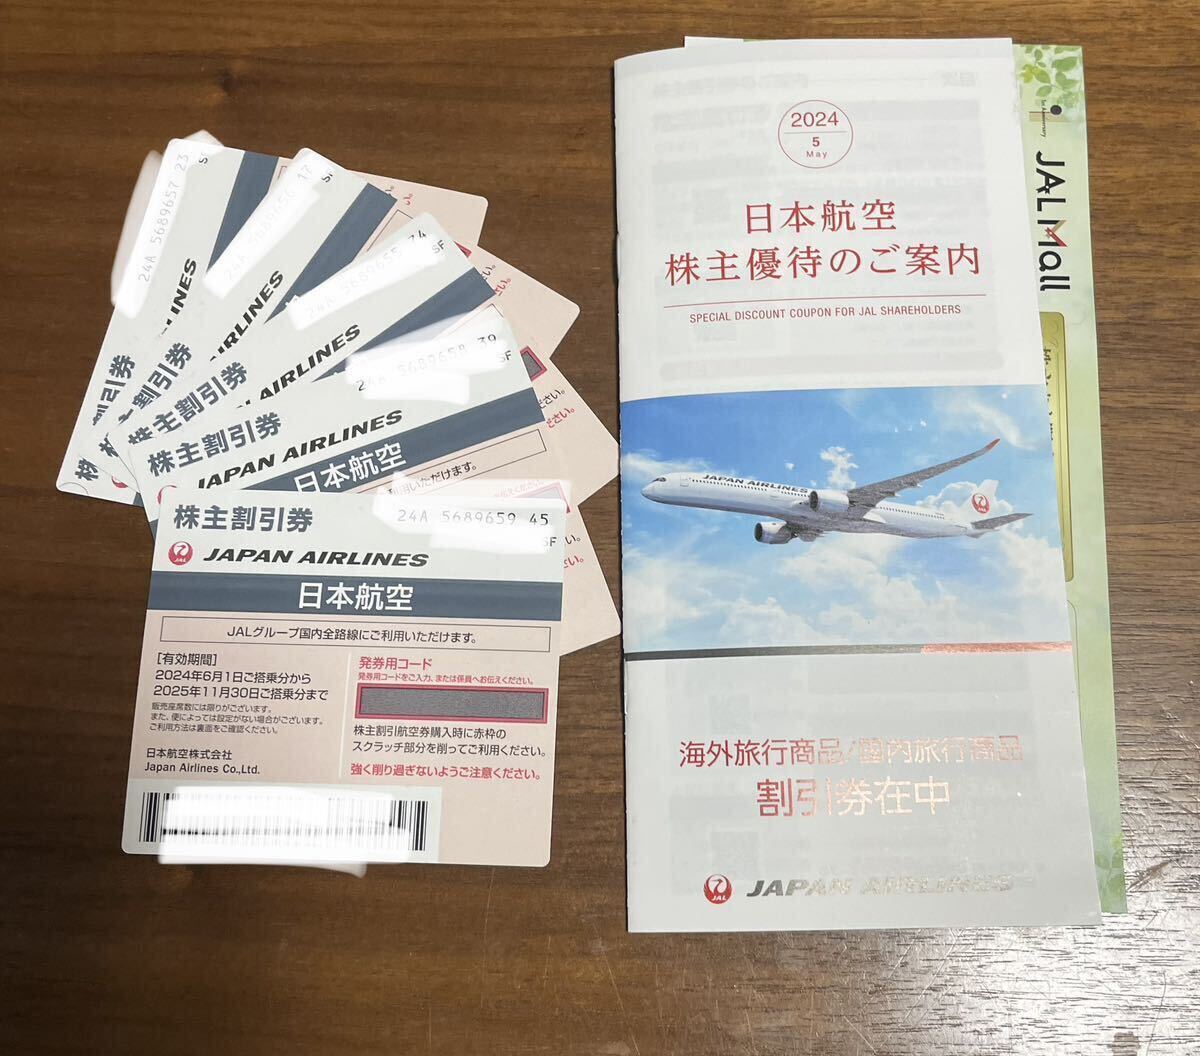 JAL иметь временные ограничения действия 2025 год 11 месяц 30 день Japan Air Lines акционер пригласительный билет 5 листов 